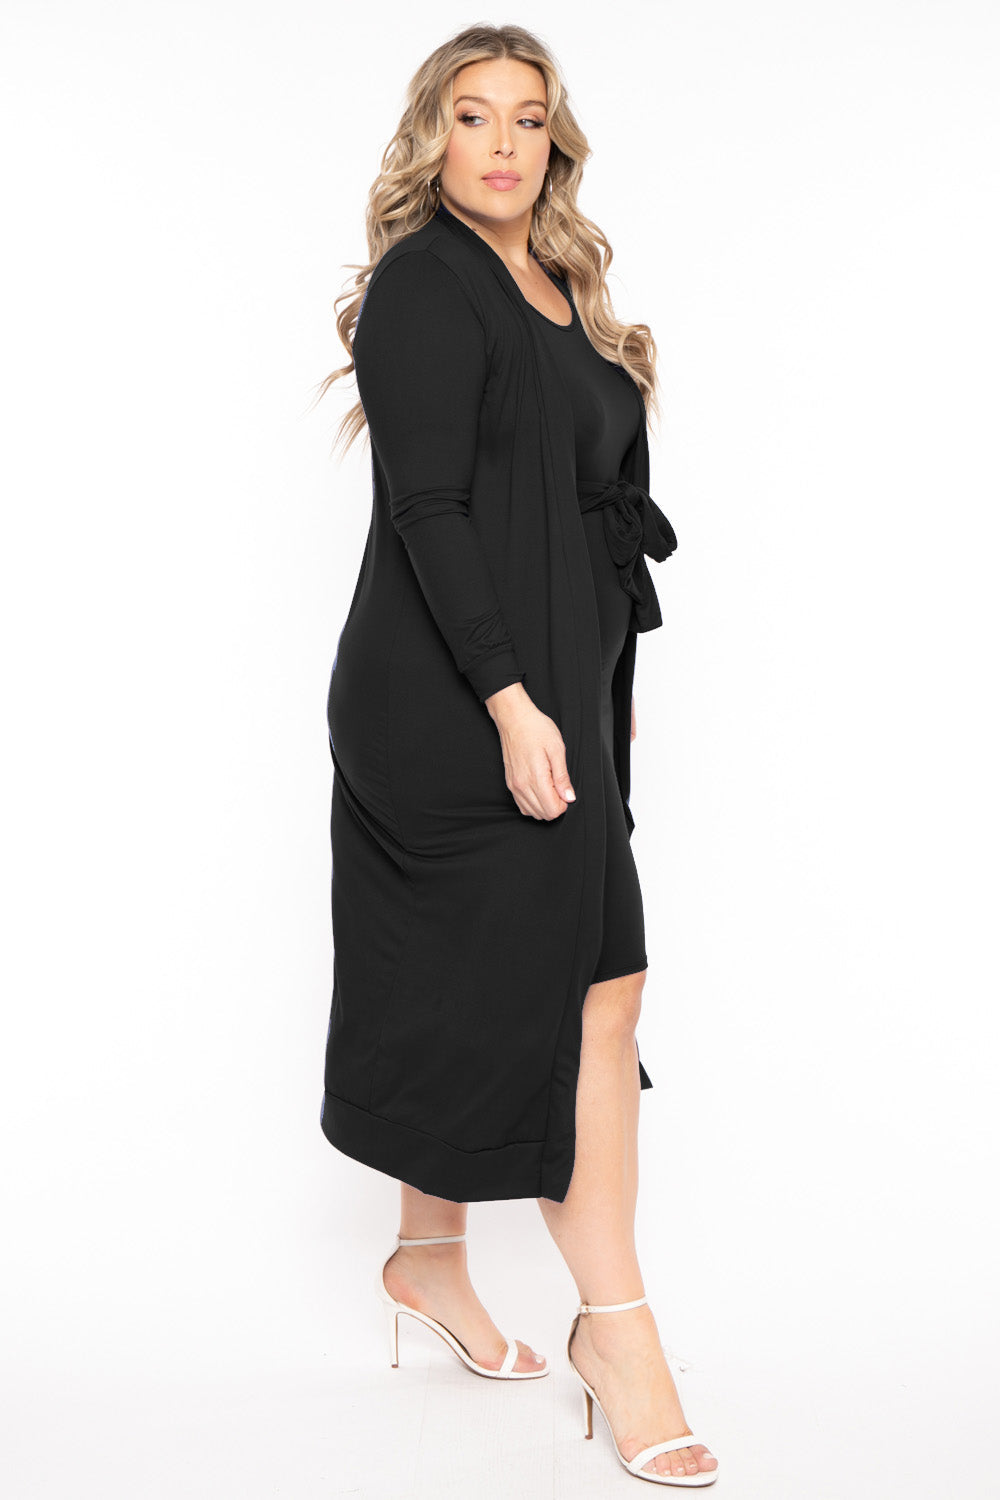 H & H FASHION Matching Sets Plus Size Shayla 2PC Cardigan And Dress - Black